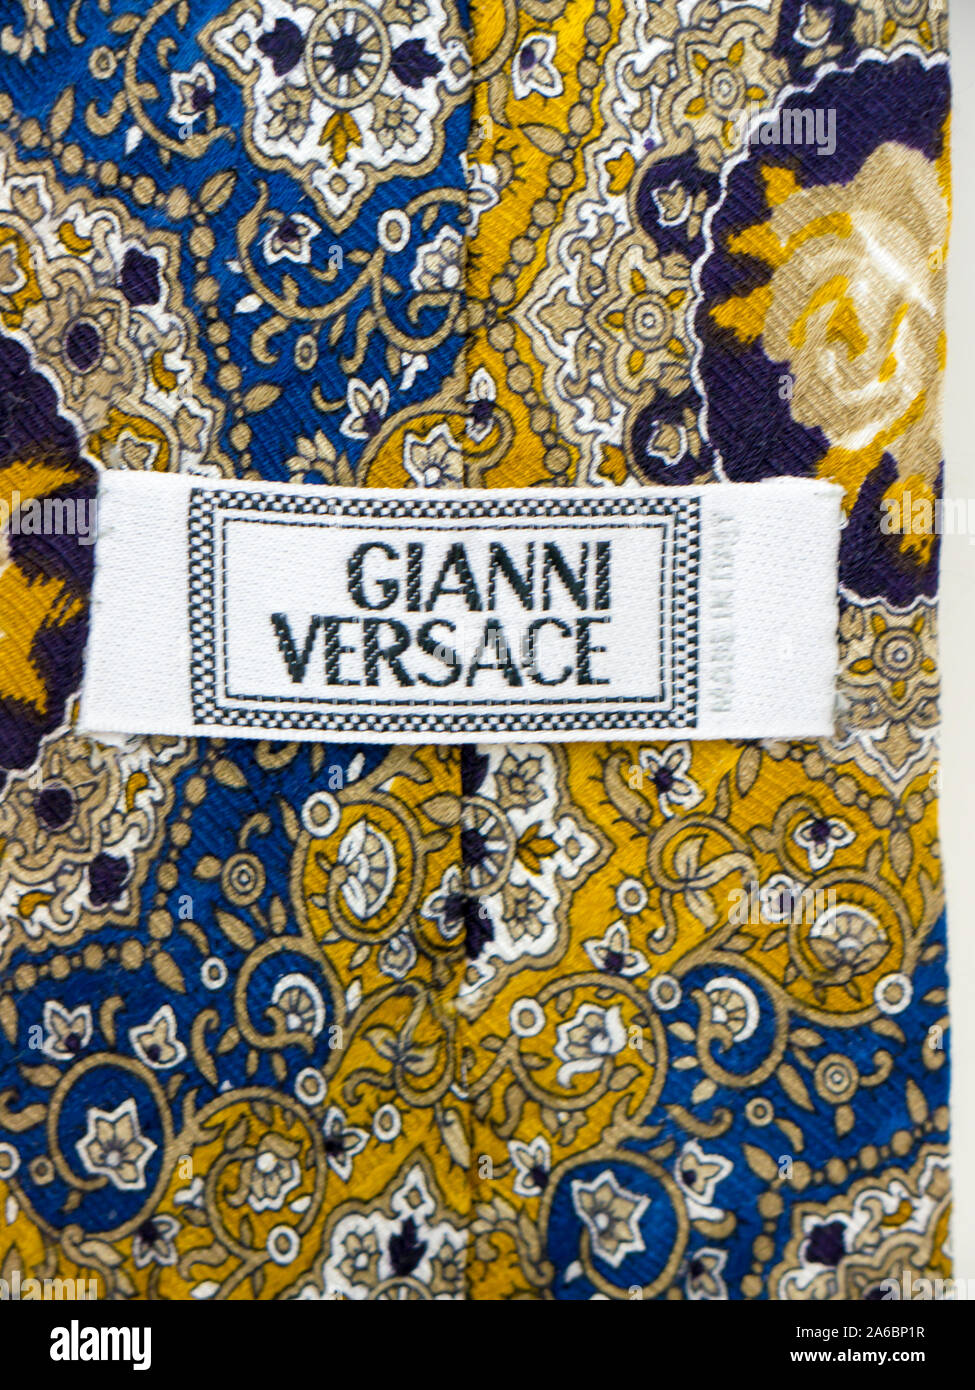 GOMEL, Bielorussia - Ottobre 25, 2019: Gianni Versace cravatta. Gianni Versace S.r.l. di solito indicato semplicemente come Versace. Foto Stock